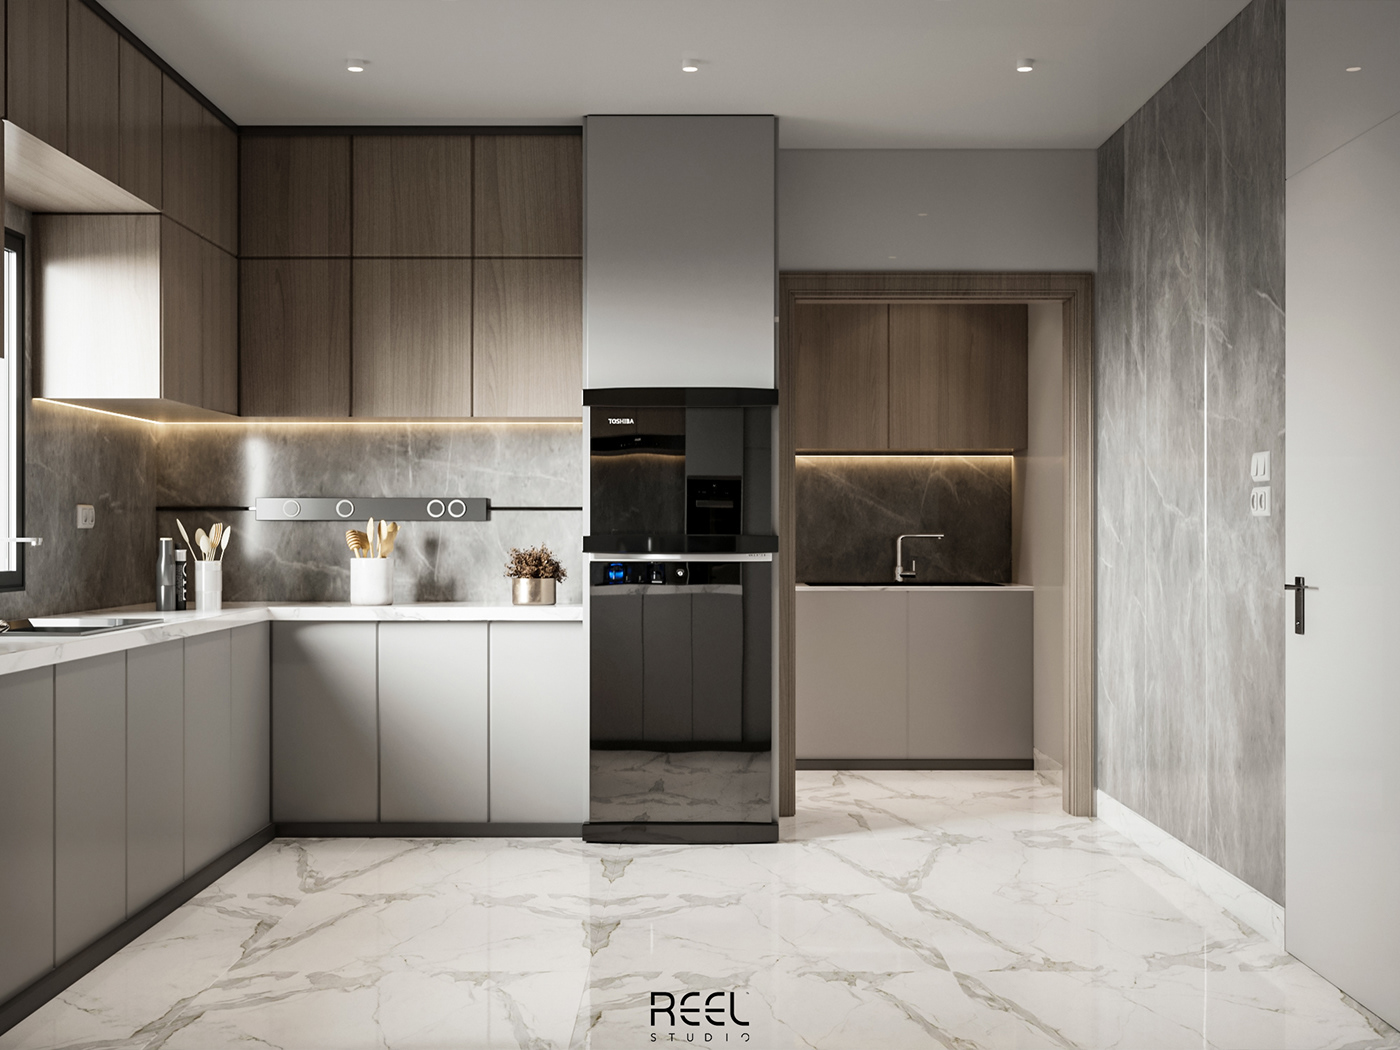 3D architecture art CGI decor design Interior kitchen minimal modern